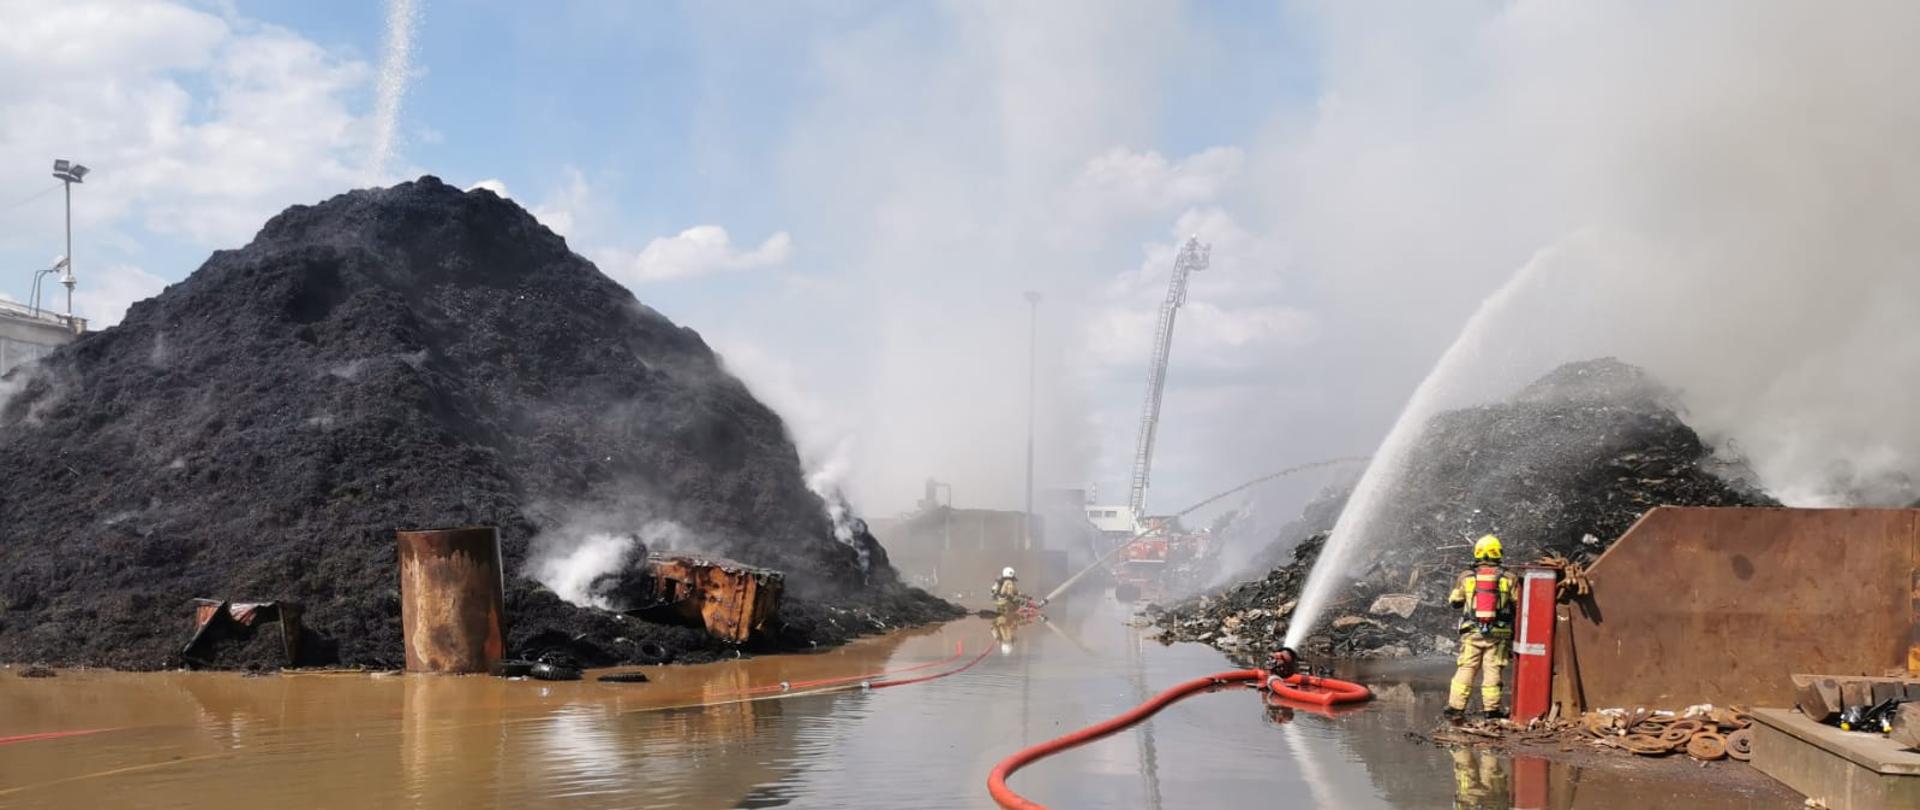 Pożar Przysieka Polska. Na zdjęciu widać hałdy palących się odpadów, wozy strażackie i strażaków gaszących pożar.